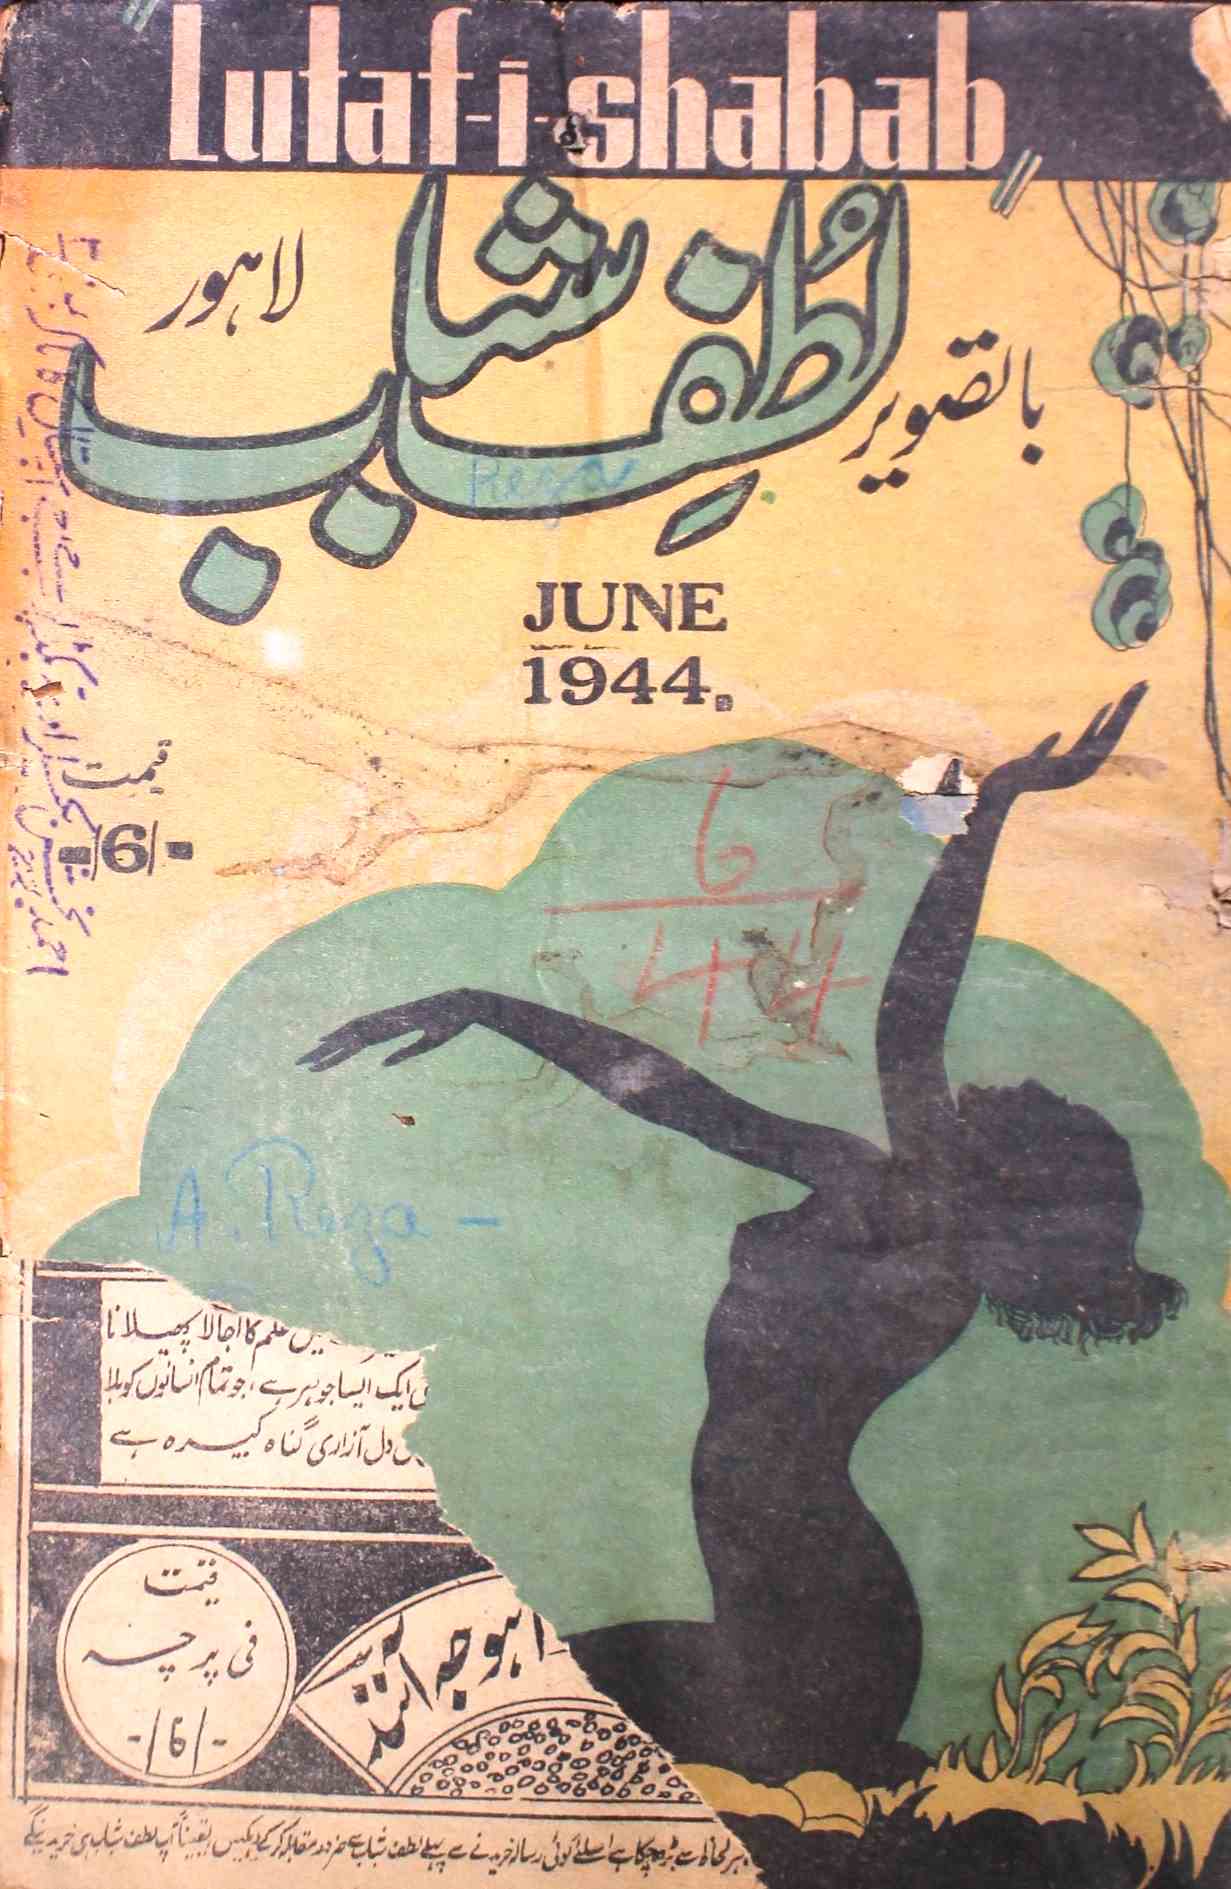 Lutafi Shabab Jild 7 No 6 June 1944-SVK